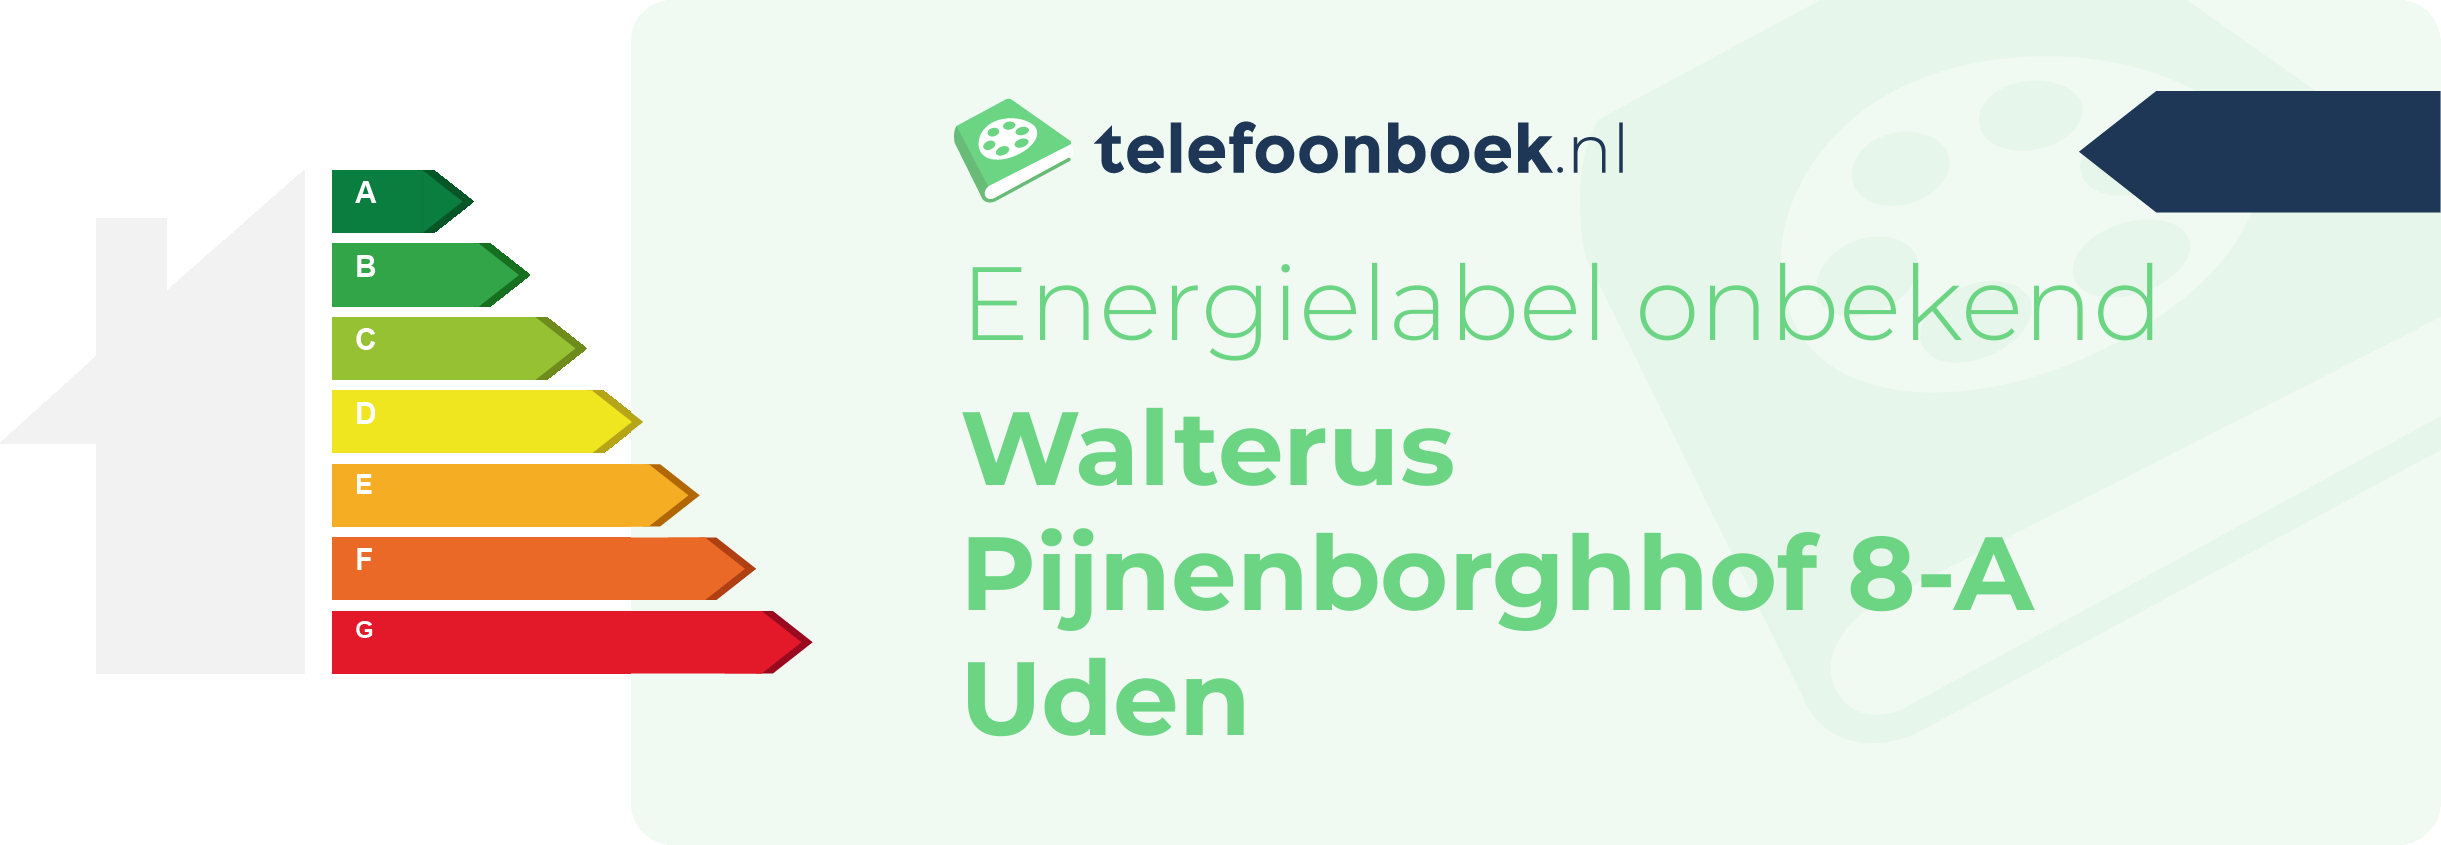 Energielabel Walterus Pijnenborghhof 8-A Uden